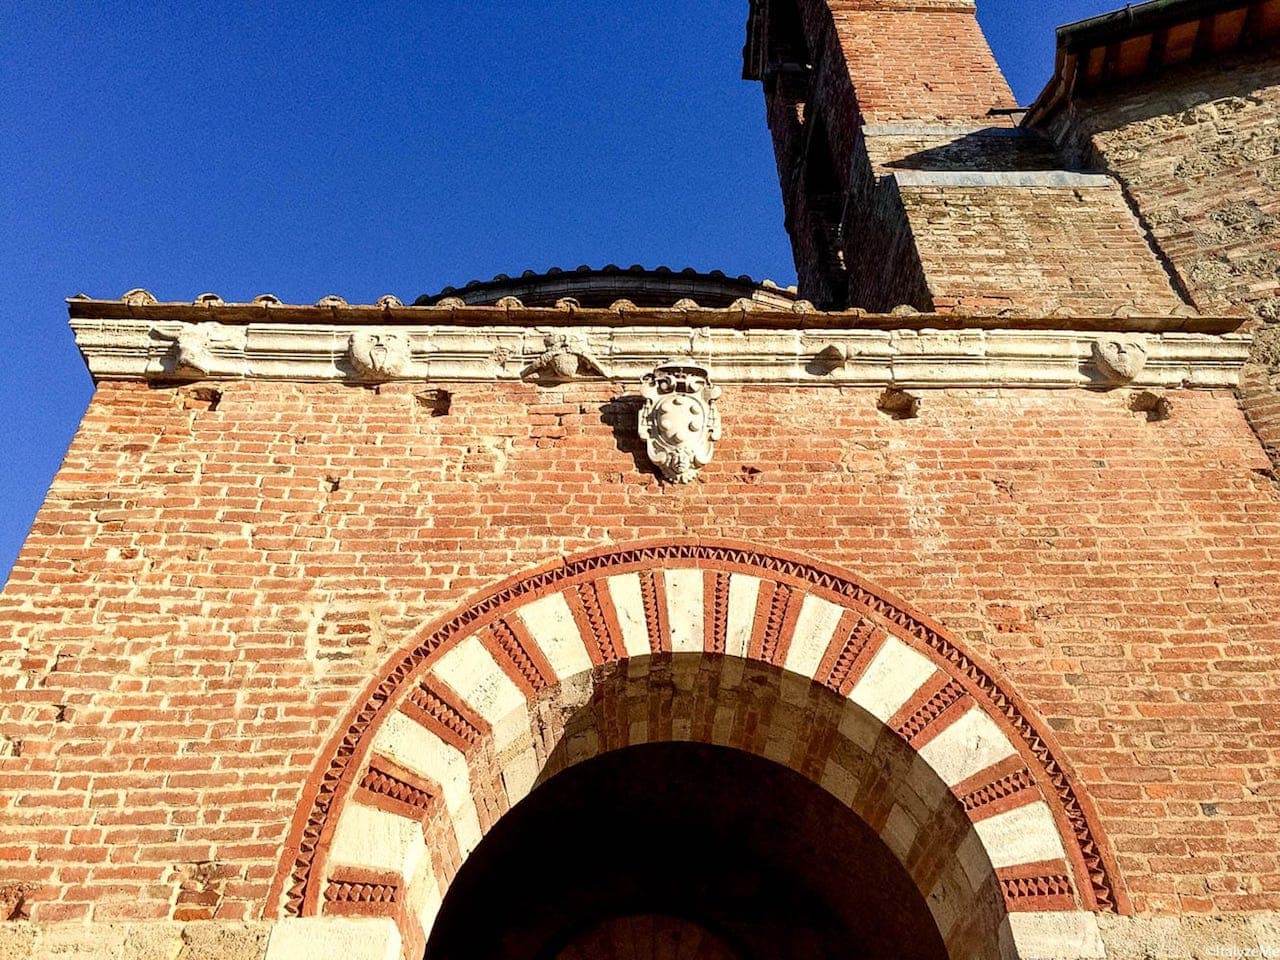 L'ingresso all'Eremo di Montesiepi, con le figure antropomorfe "a guardia" dell'ingresso